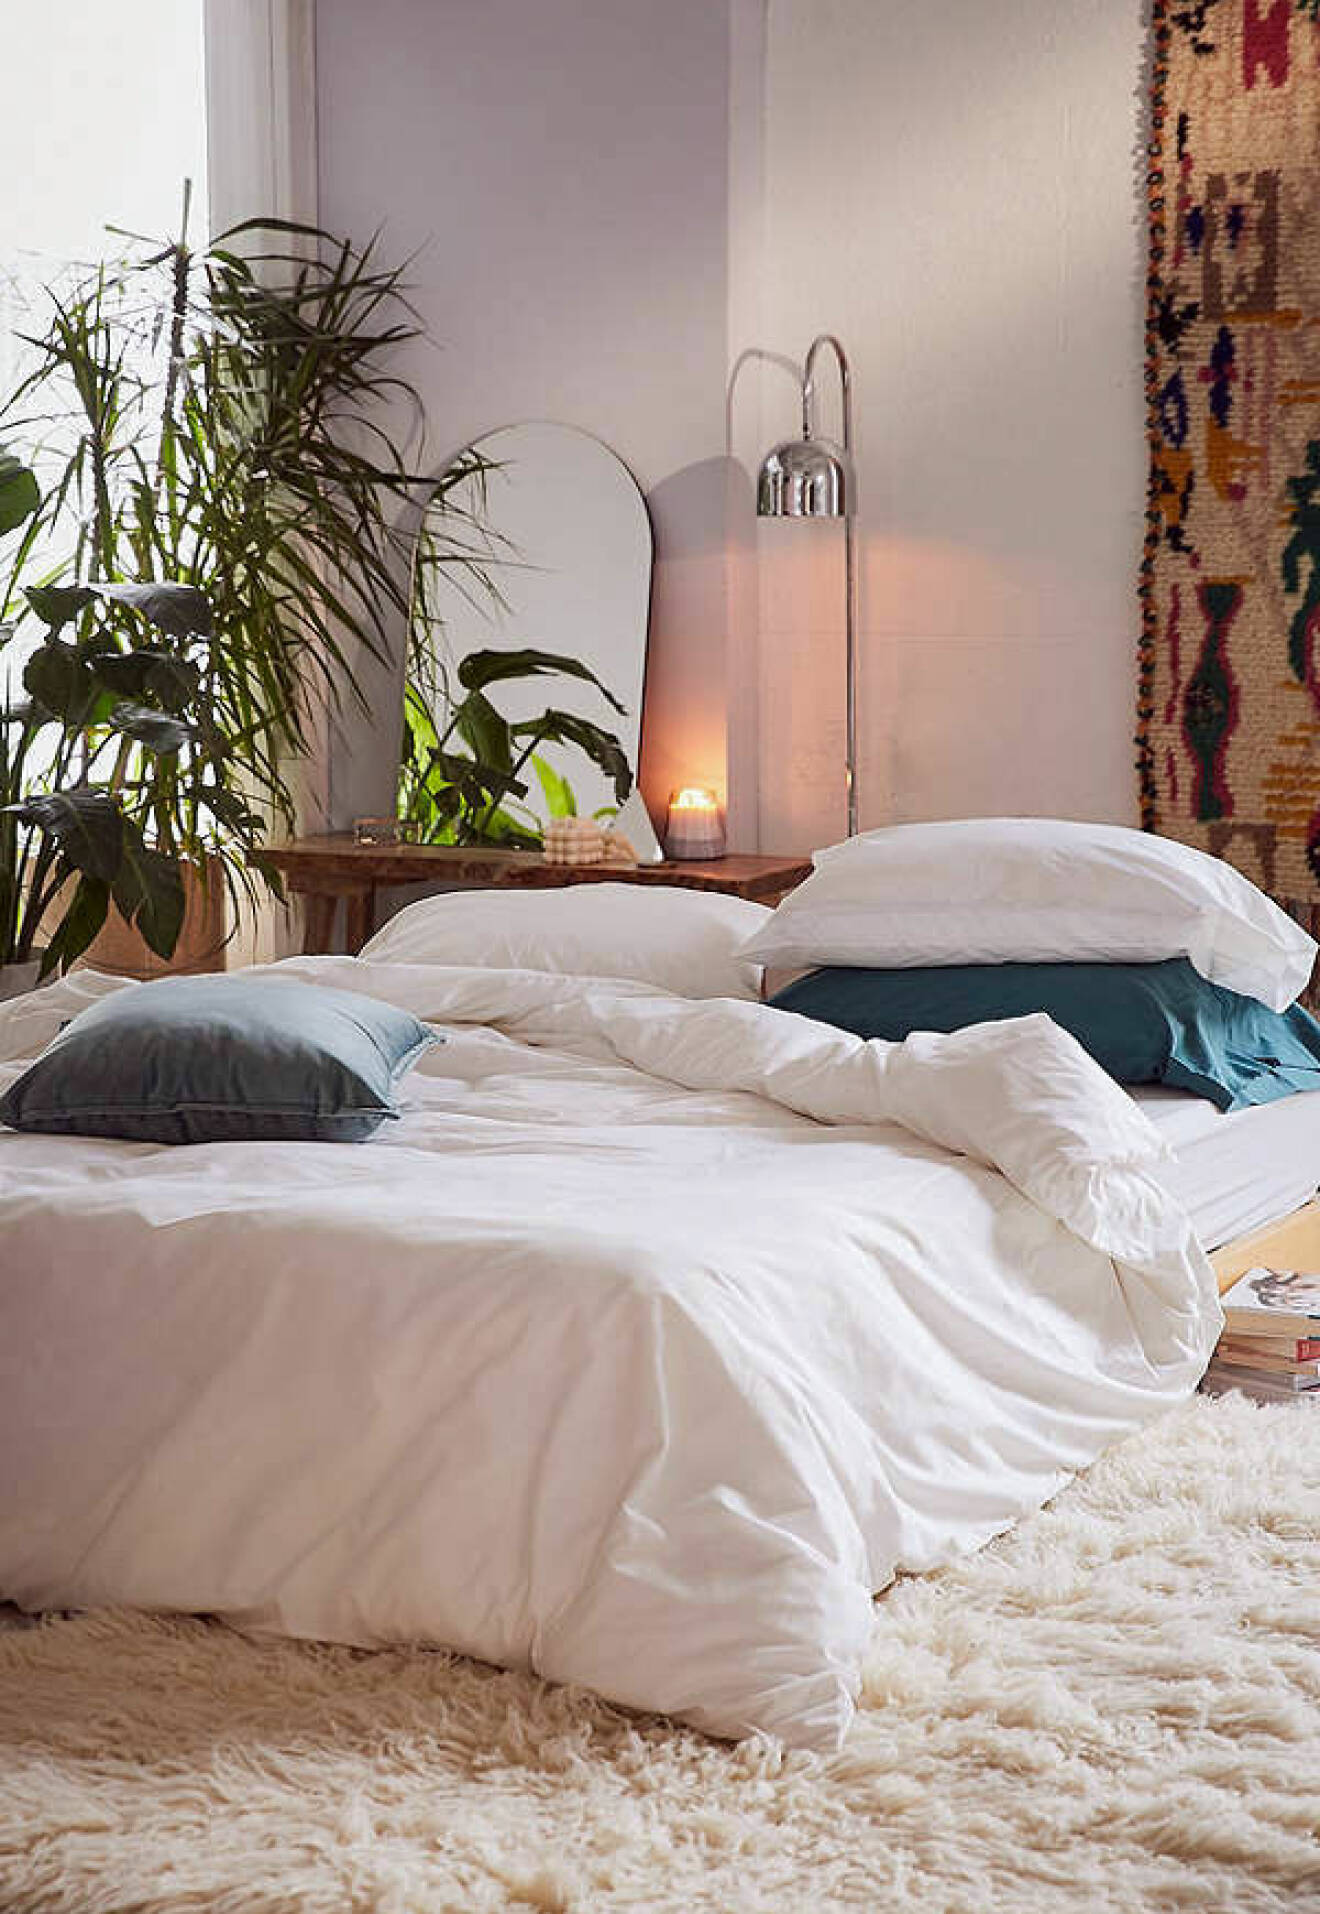 Vit säng i ombonad omgivning med växter och textilier